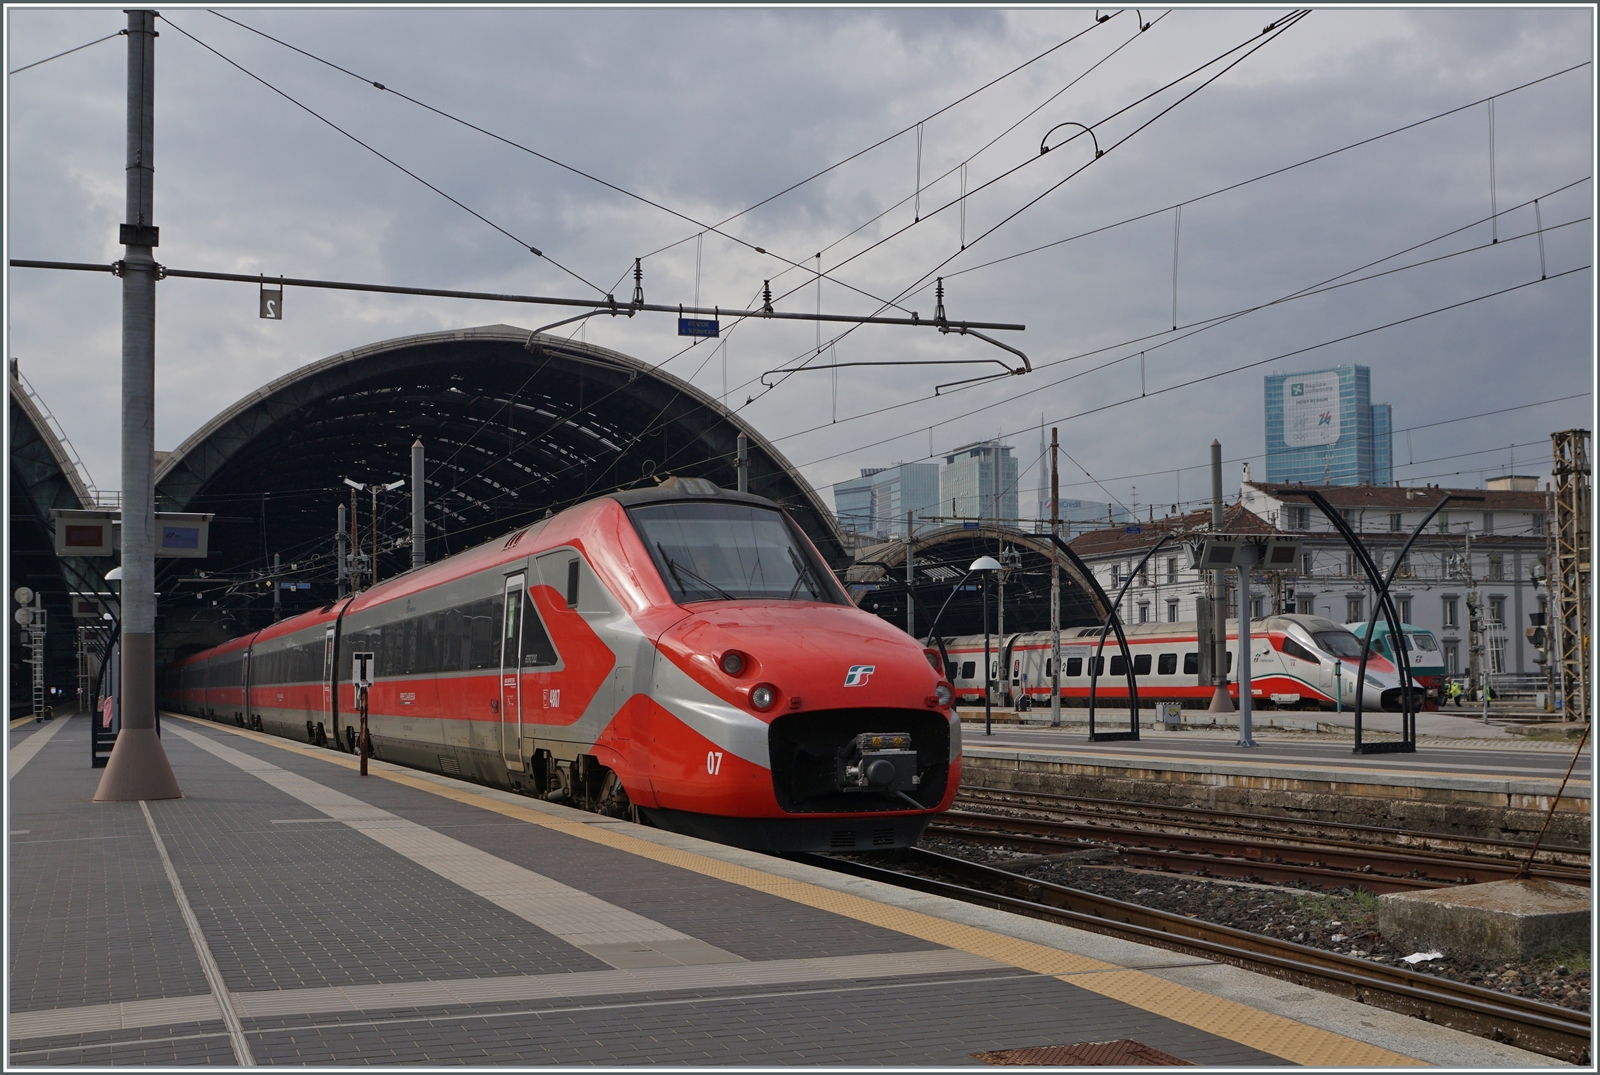 Der FS Trenitalia ETR 700 007 verlässt als Frecciargento FR 9723 nach Venezia SL den Bahnhof von Milano Centrale. 

8. November 2022